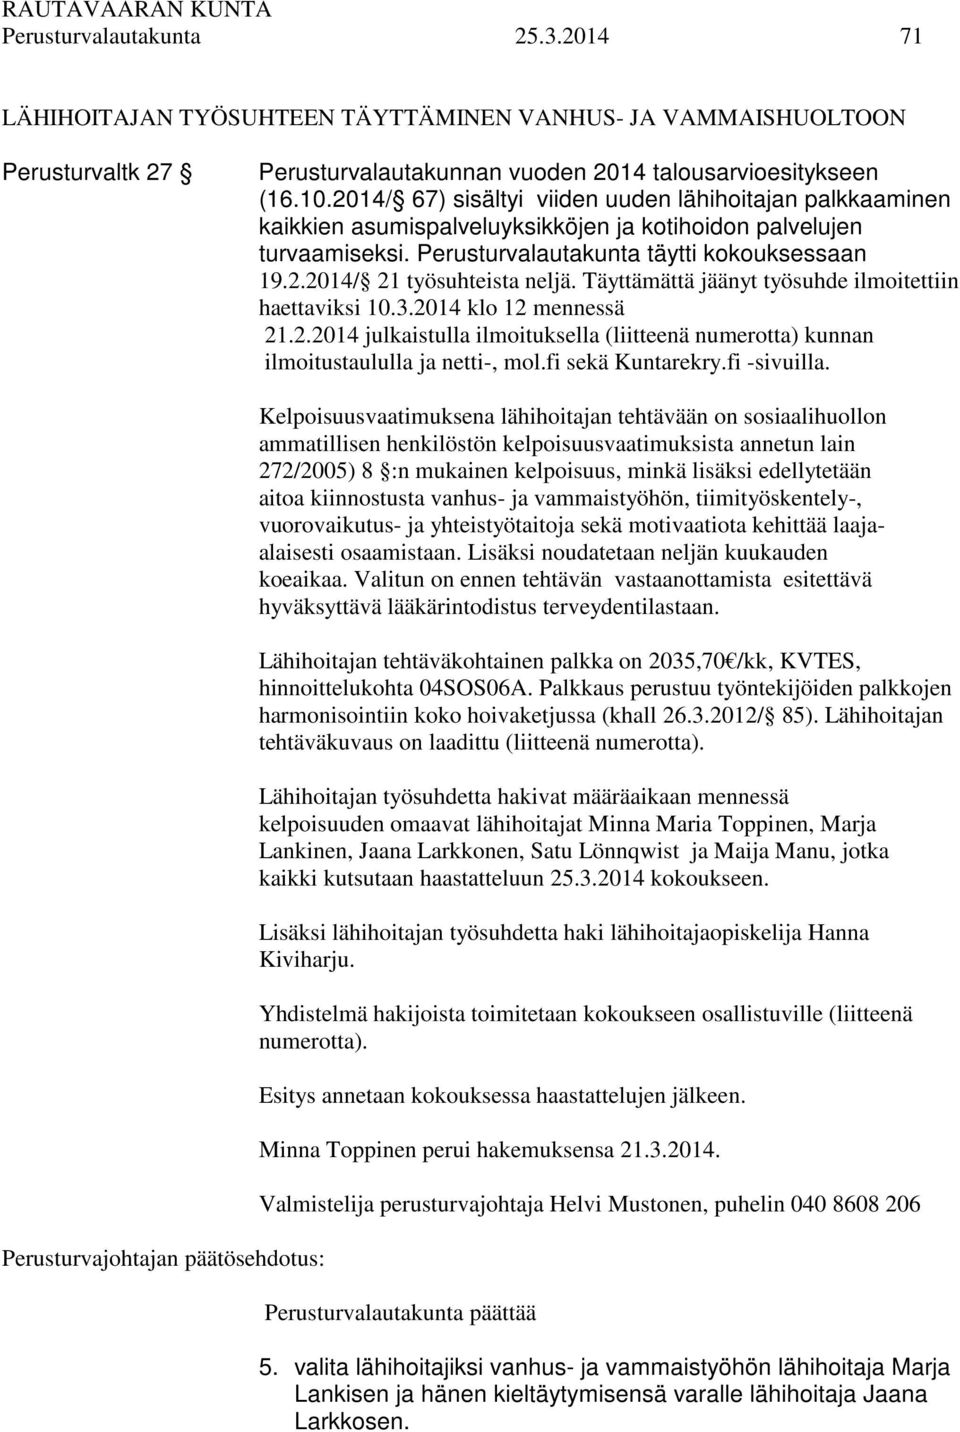 Täyttämättä jäänyt työsuhde ilmoitettiin haettaviksi 10.3.2014 klo 12 mennessä 21.2.2014 julkaistulla ilmoituksella (liitteenä numerotta) kunnan ilmoitustaululla ja netti-, mol.fi sekä Kuntarekry.